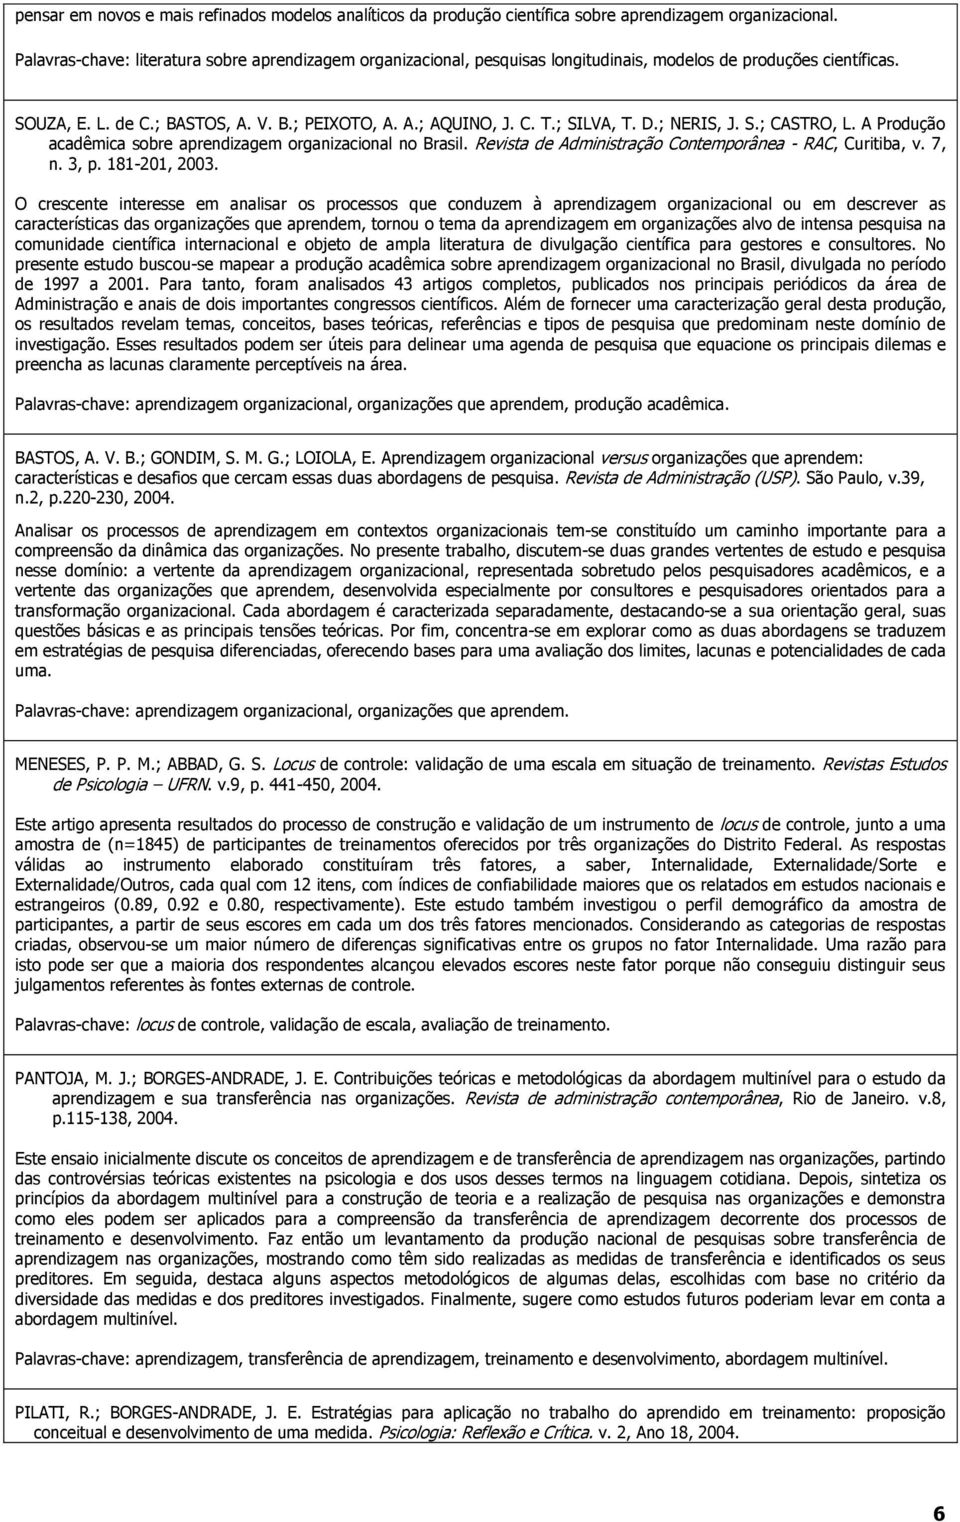 ; SILVA, T. D.; NERIS, J. S.; CASTRO, L. A Produção acadêmica sobre aprendizagem organizacional no Brasil. Revista de Administração Contemporânea - RAC, Curitiba, v. 7, n. 3, p. 181-201, 2003.